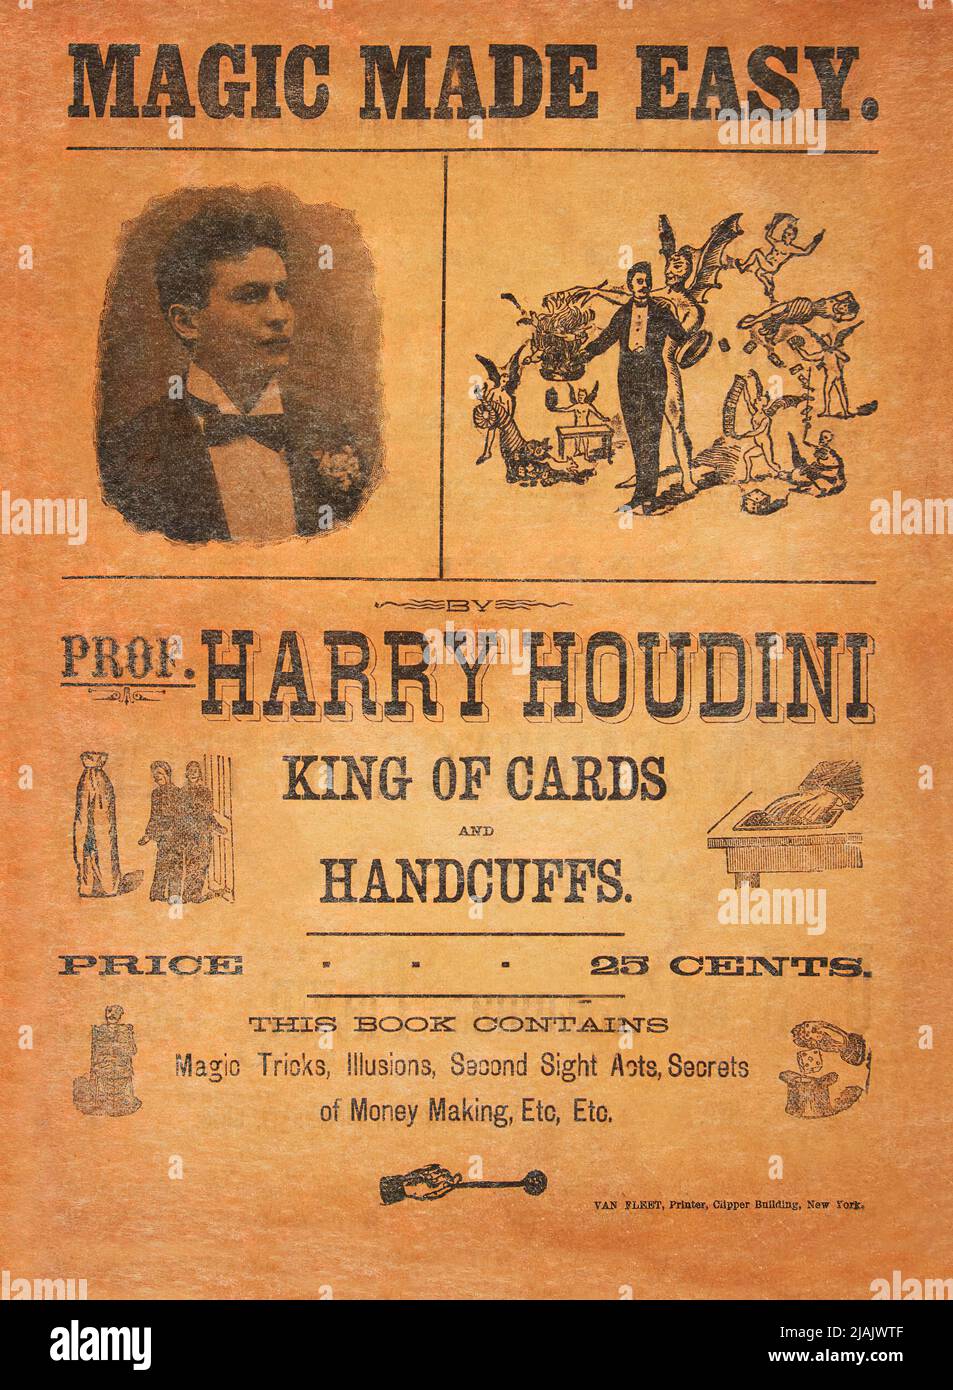 Harry Houdini Magic Made Easy Flyer Stockfoto